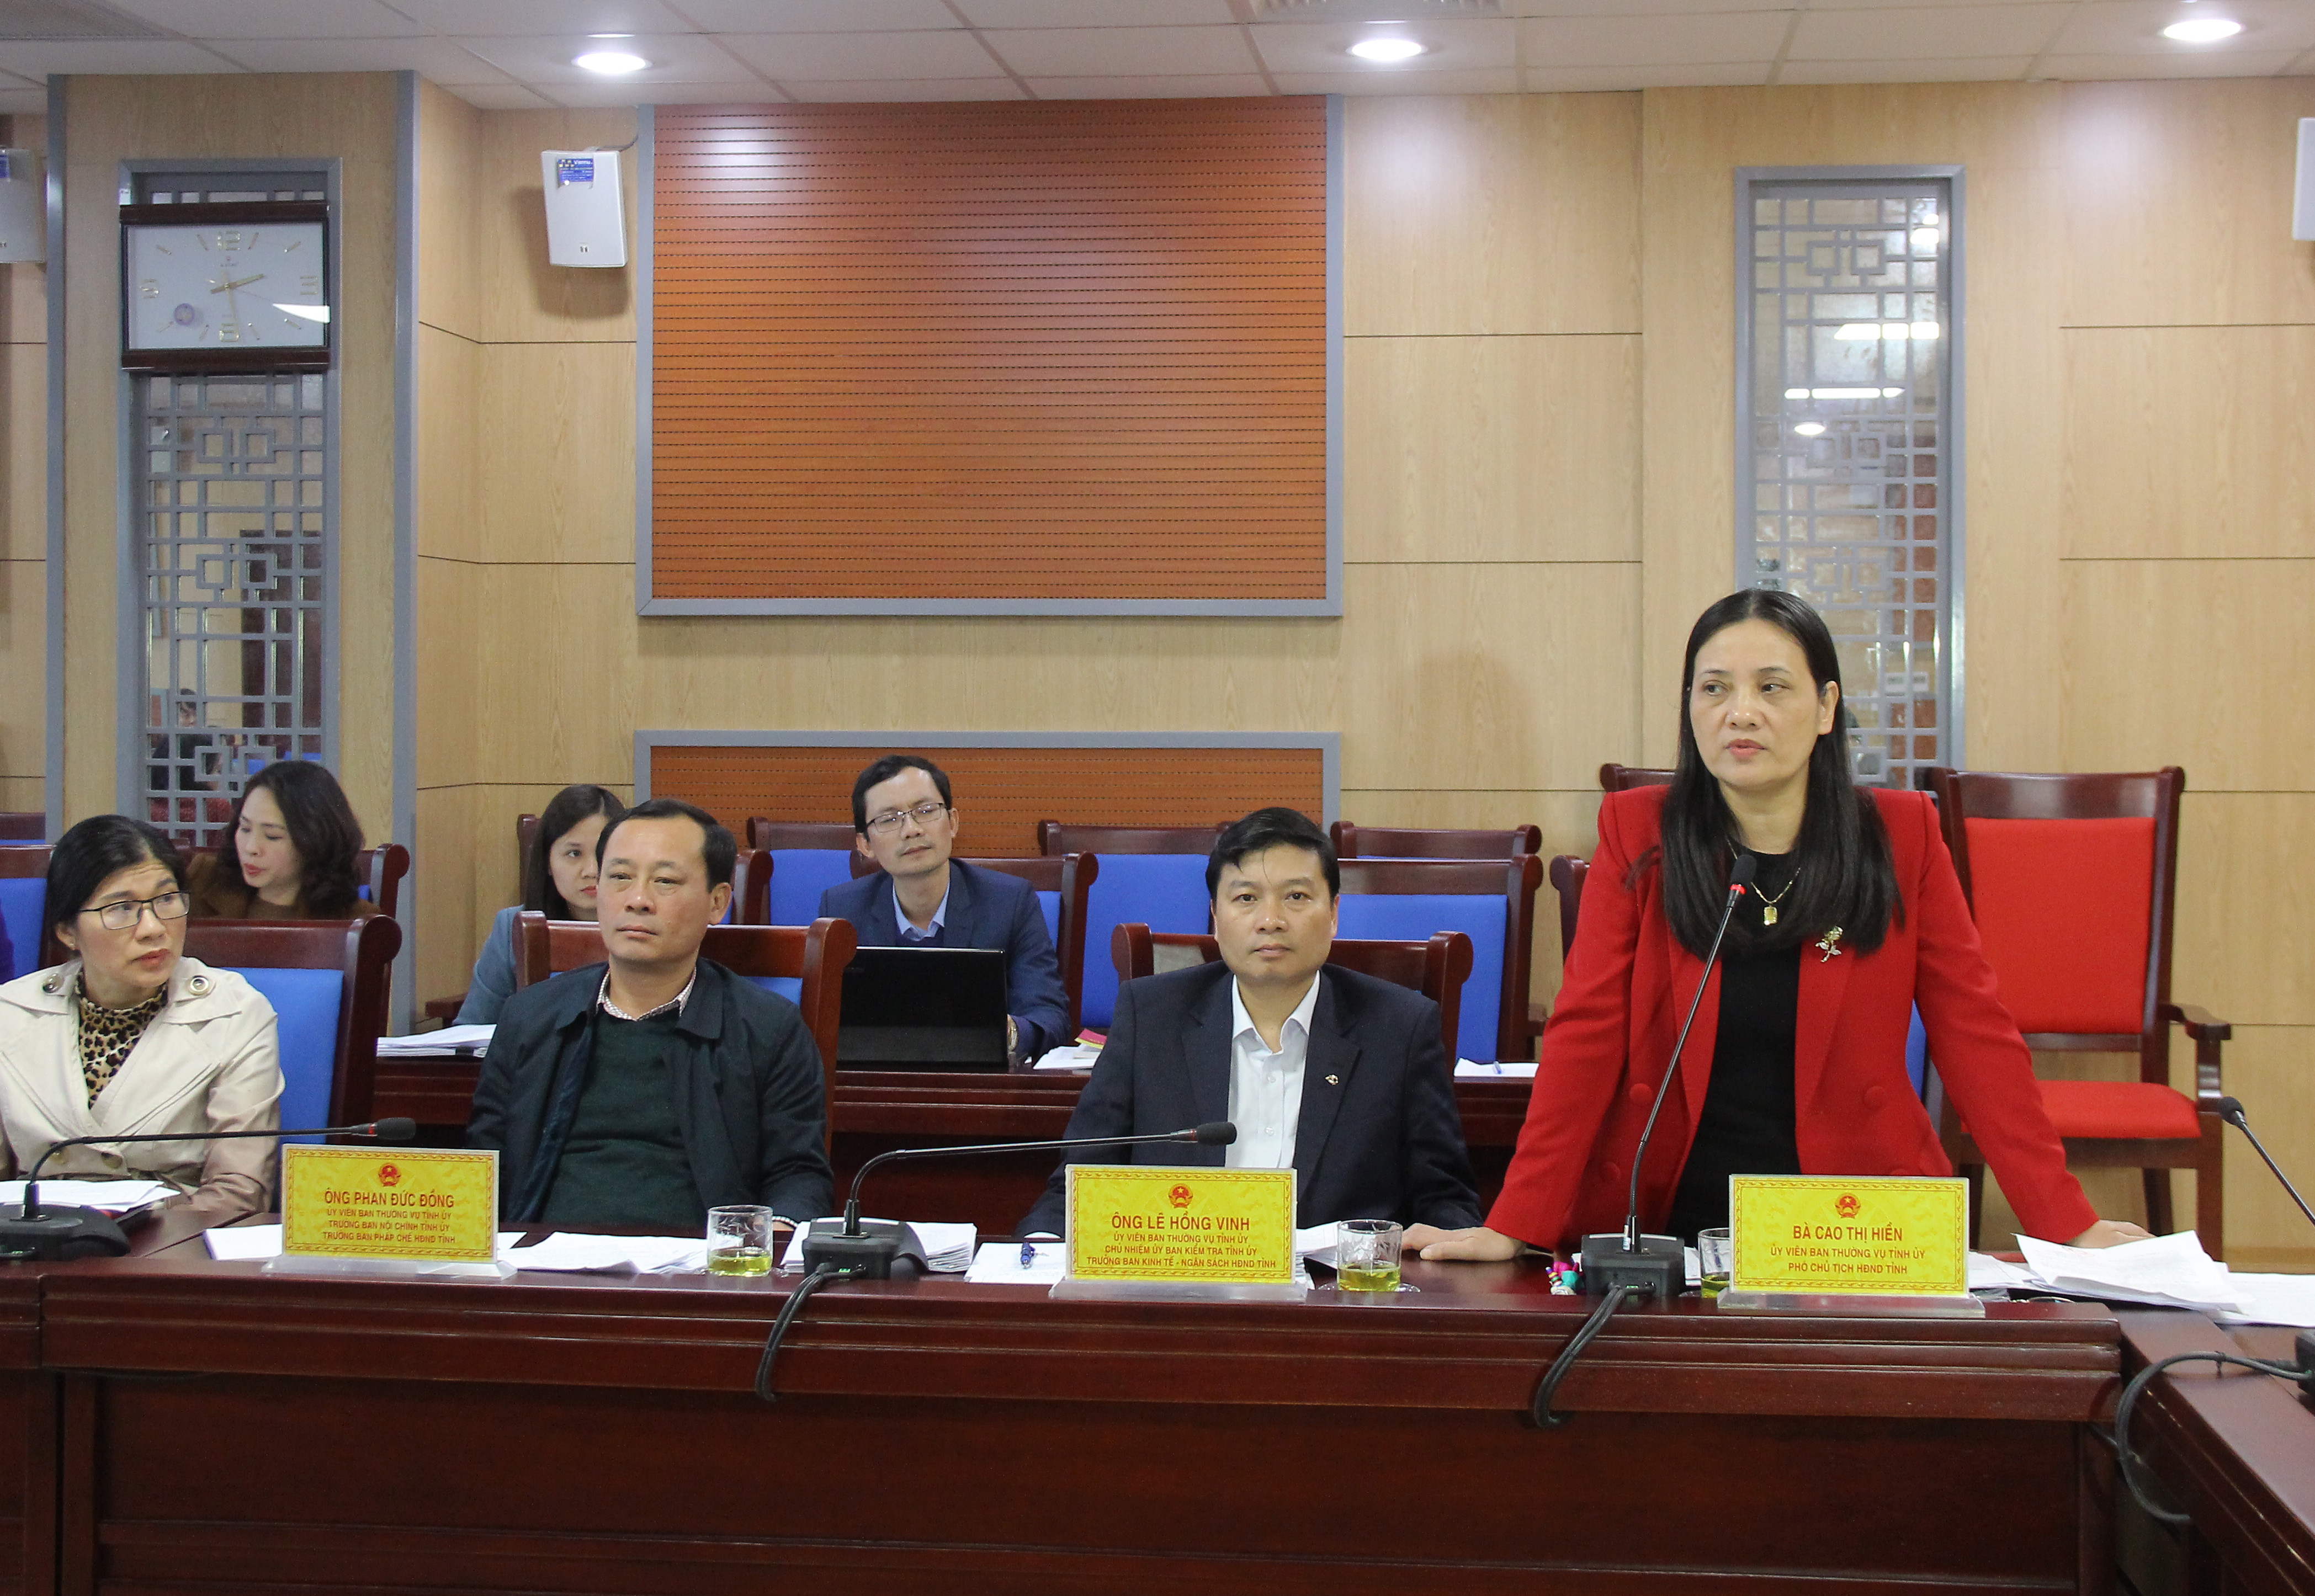 Phó Chủ tịch HĐND tỉnh Cao Thị Hiền đề nghị đưa ra khỏi danh mục các nội dung chưa đảm bảo quy trình